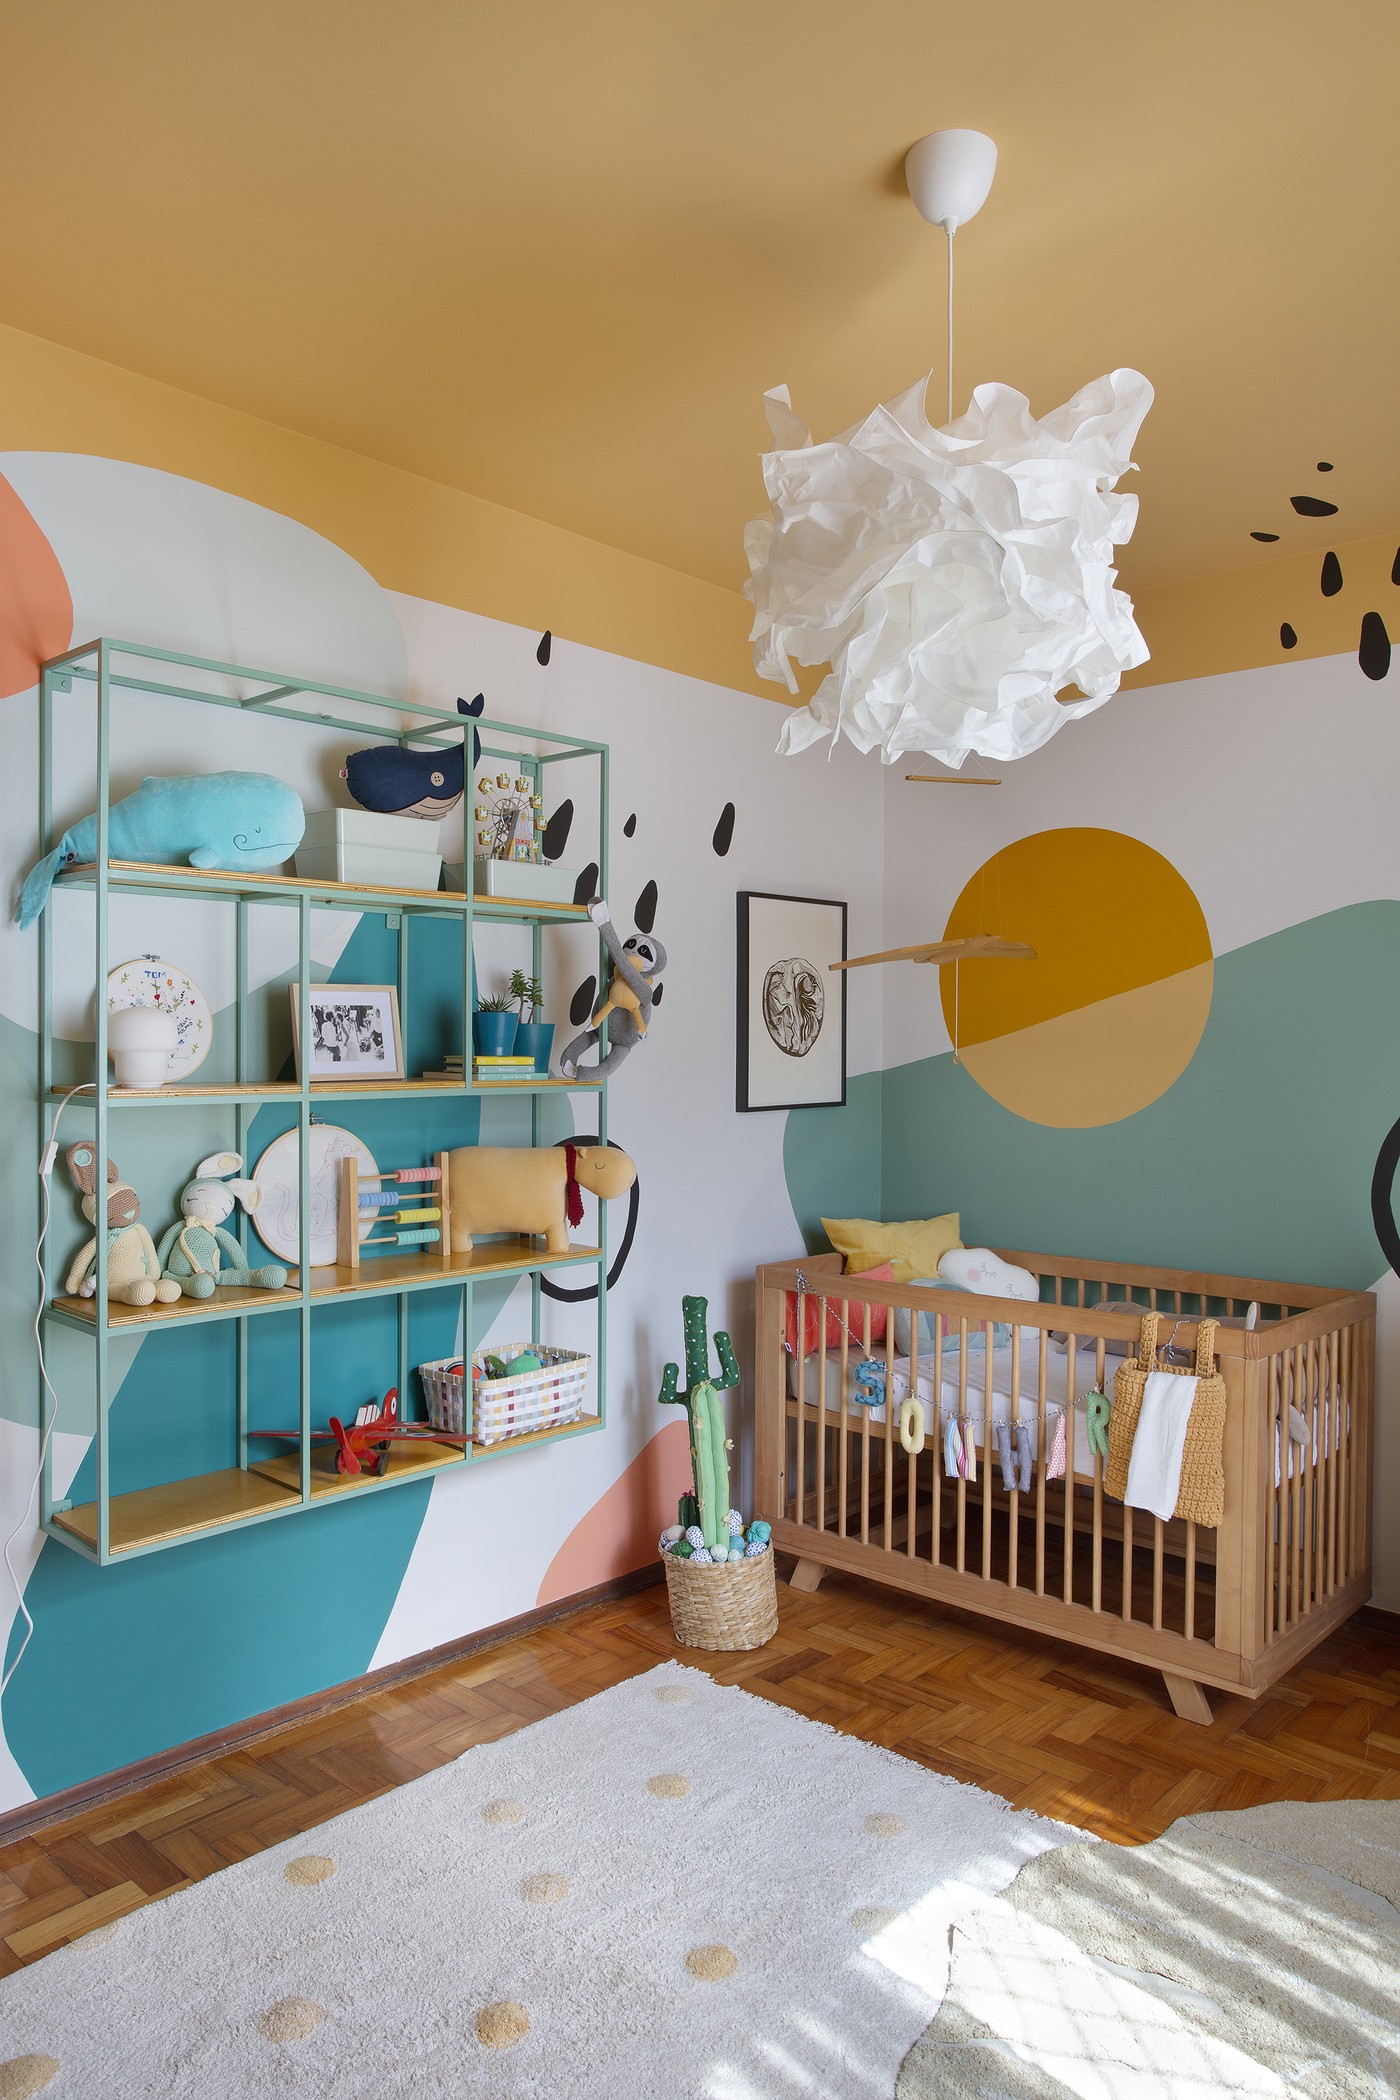 Décor do dia: quarto infantil com pintura orgânica e colorida (Foto: Juliano Colodeti/MCA Estúdio)